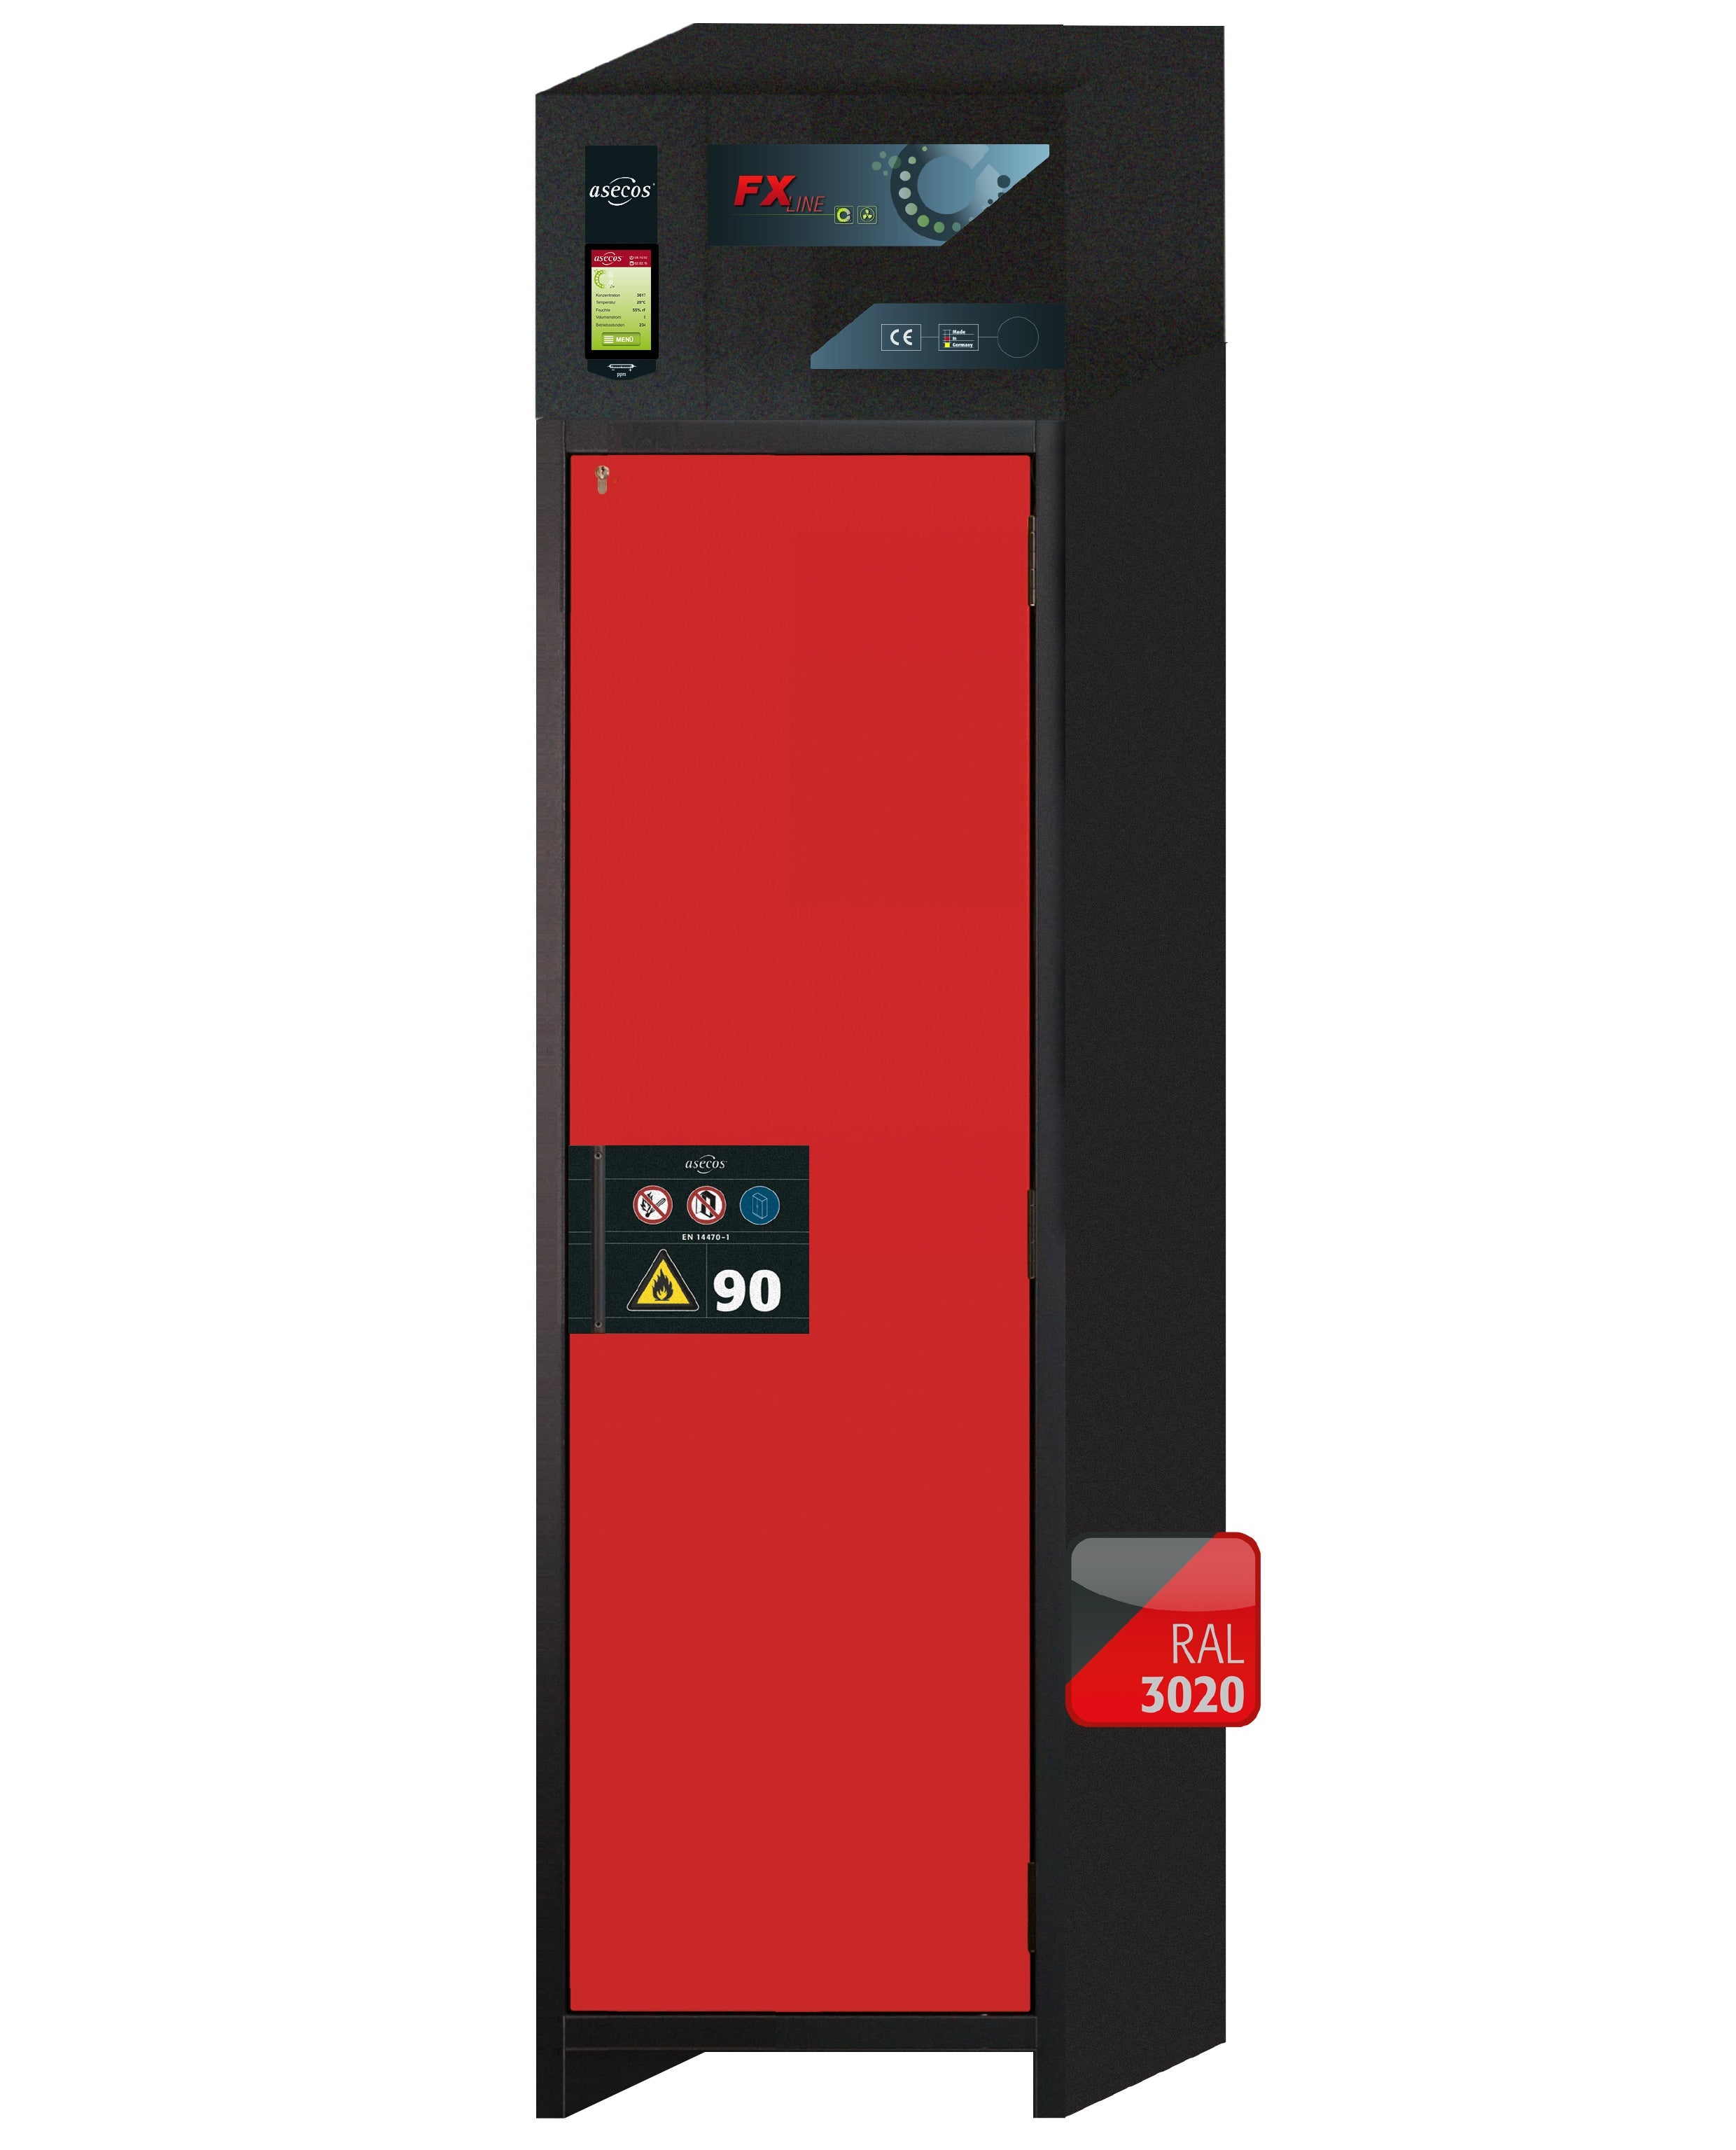 Armoire de filtration d'air de recirculation de type 90 FX-PEGASUS-90 modèle FX90.229.060.WDACR en rouge signalisation RAL 3020 avec 3x pieds de plateau standard (polypropylène)